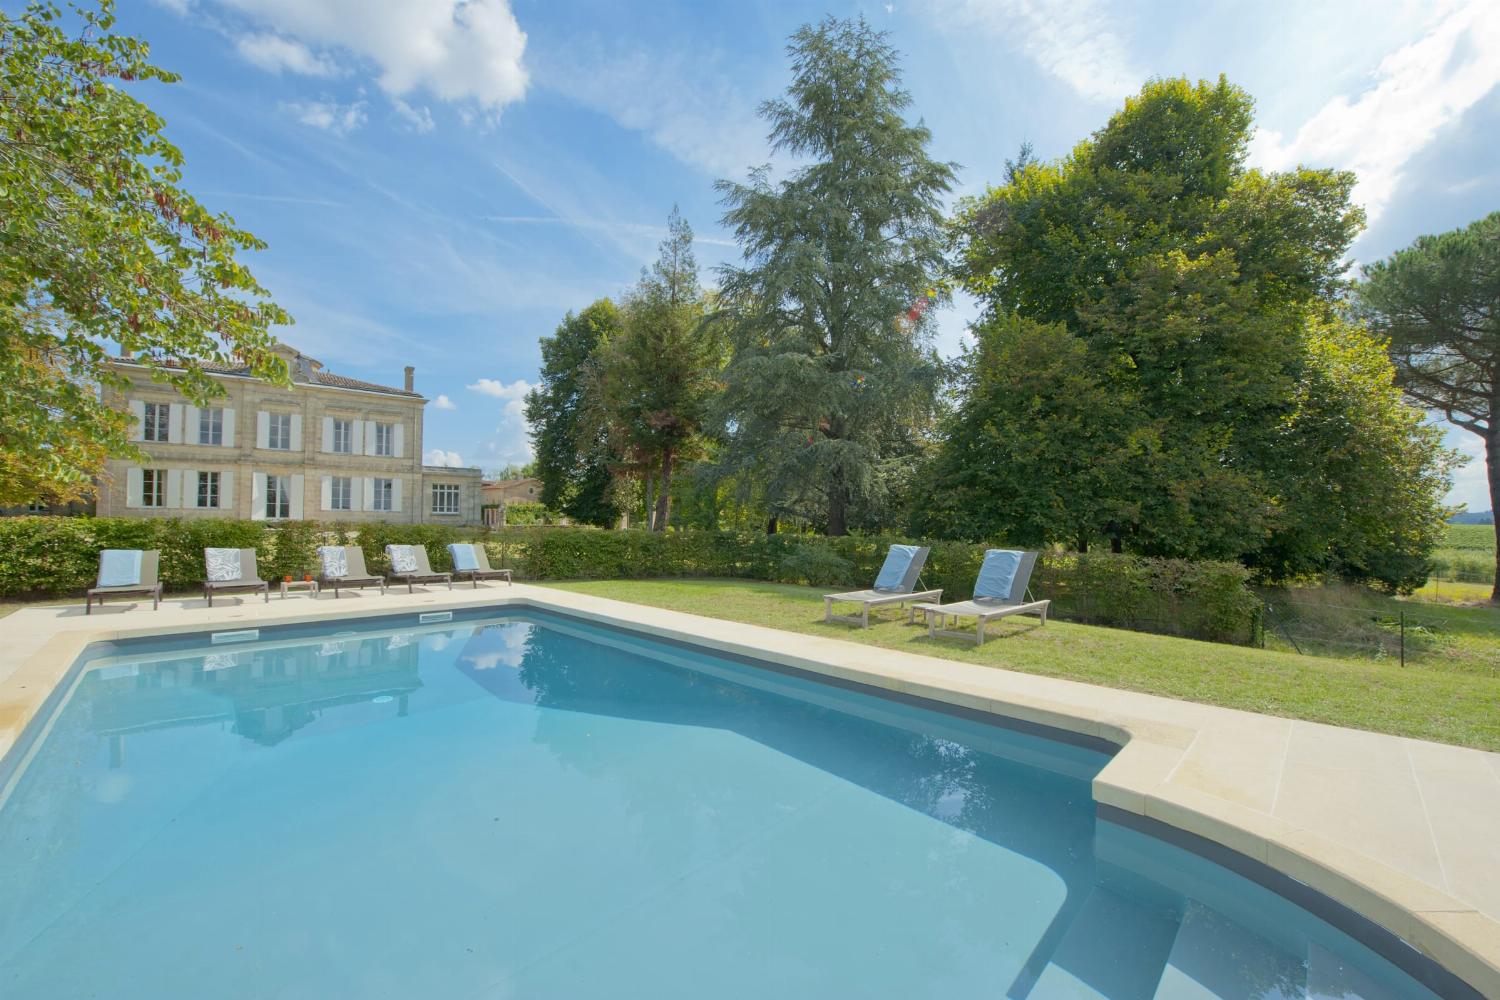 Château de vacances en Gironde avec piscine priveé